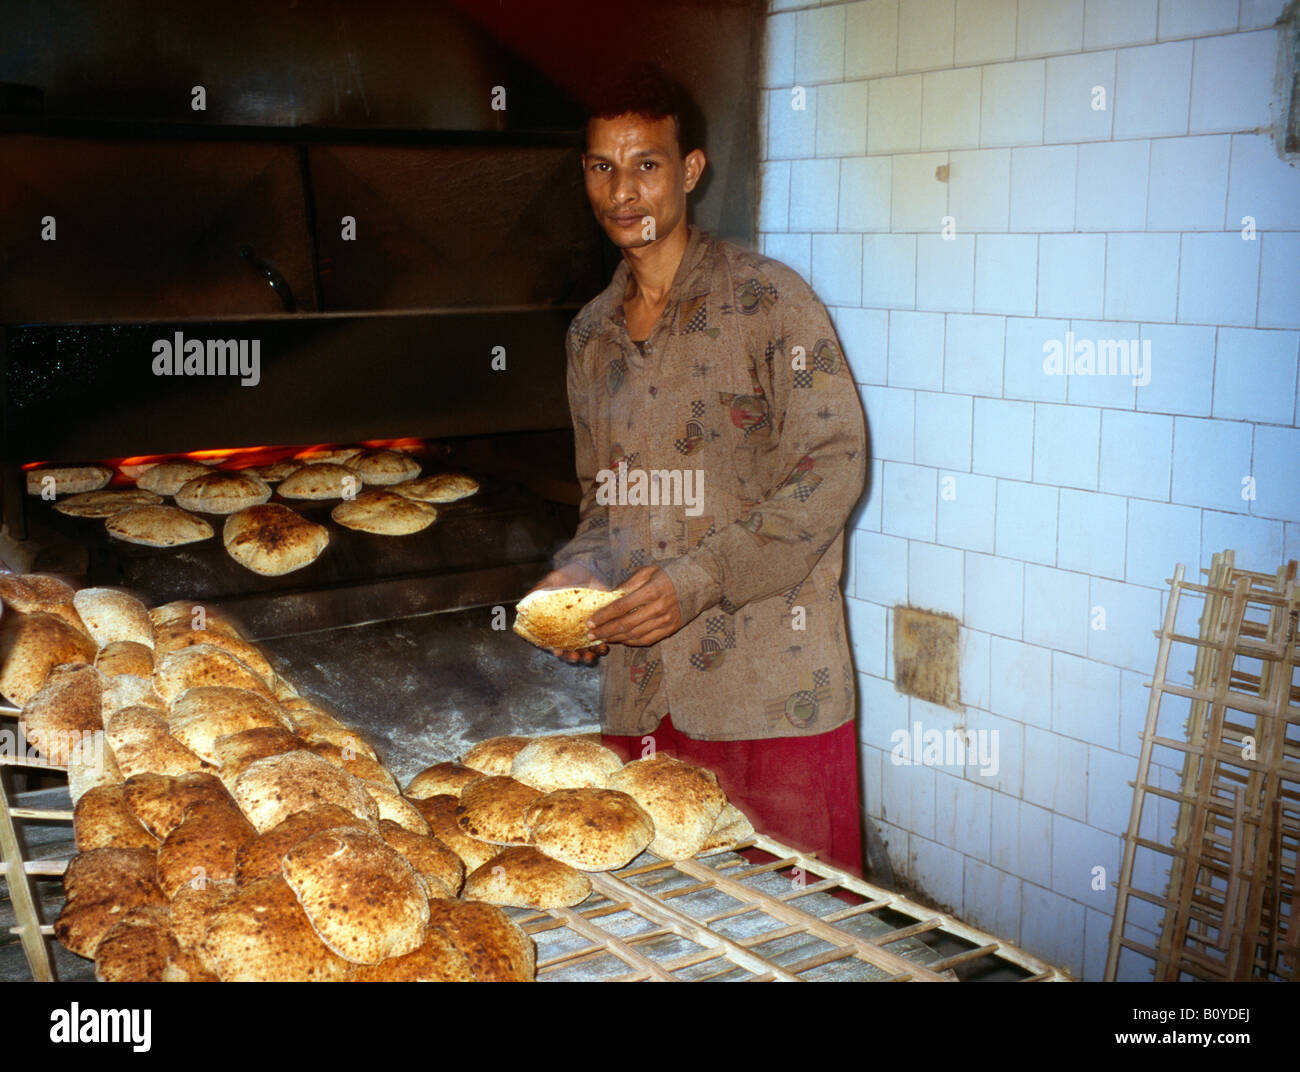 inside-bakery-egypt-bazaar-baker-making-